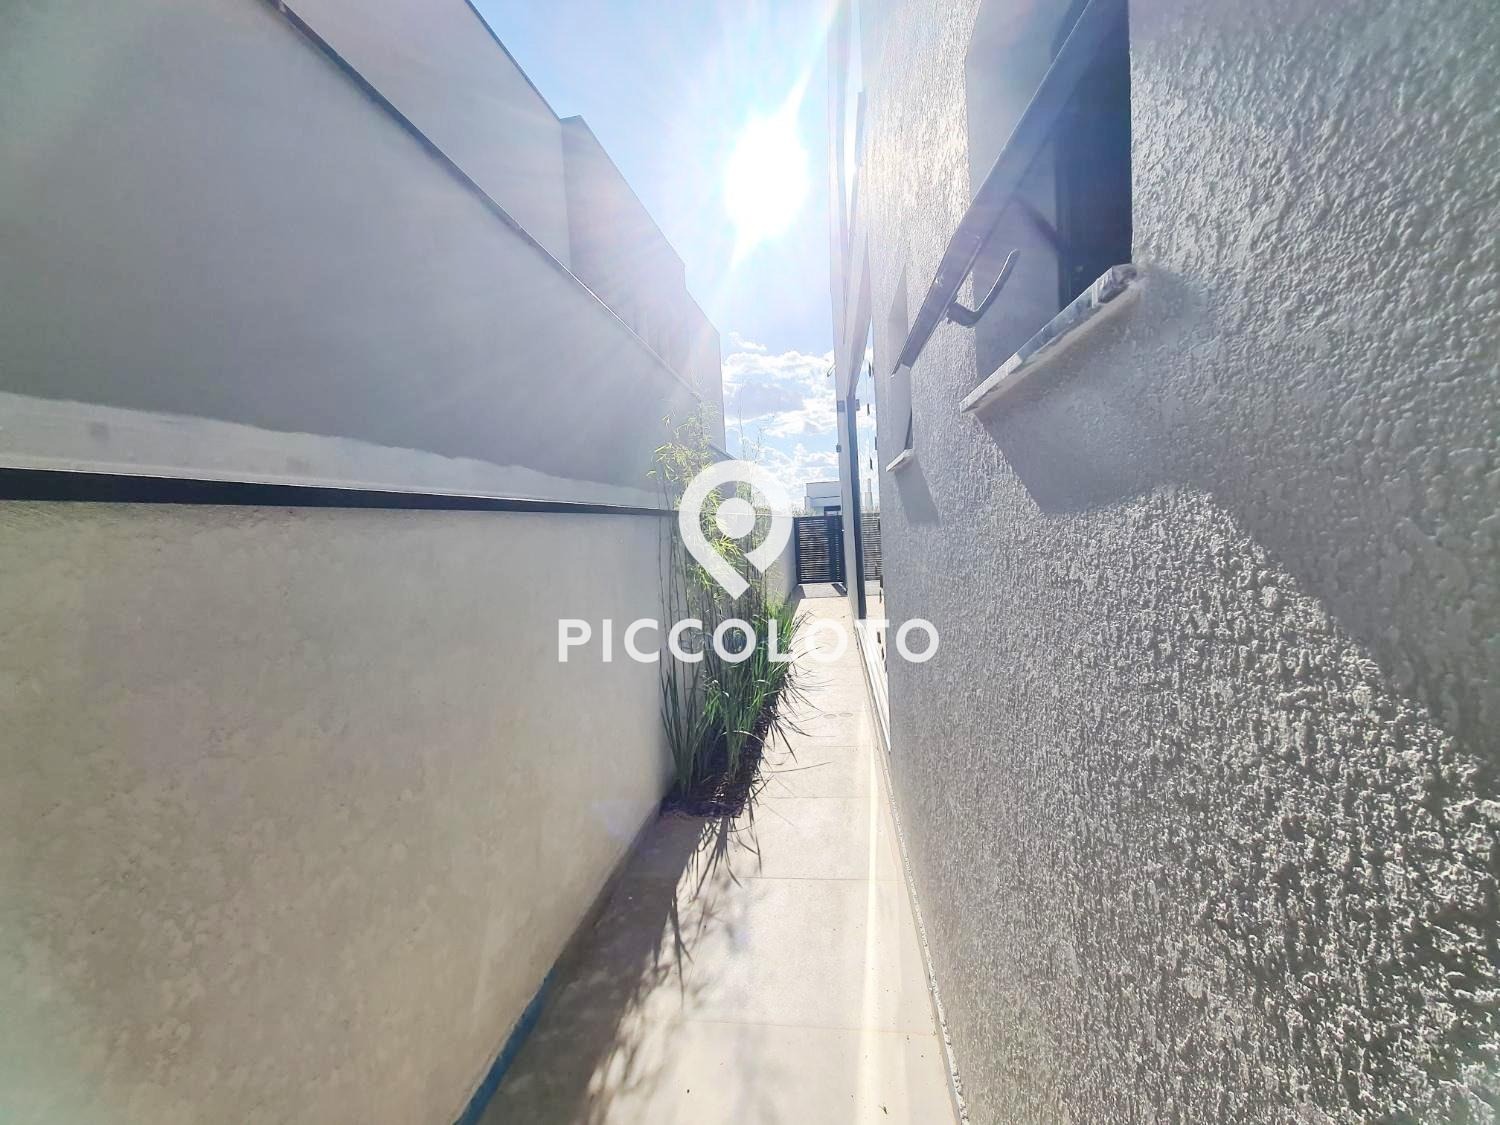 Piccoloto -Casa à venda no Alphaville Dom Pedro 2 em Campinas